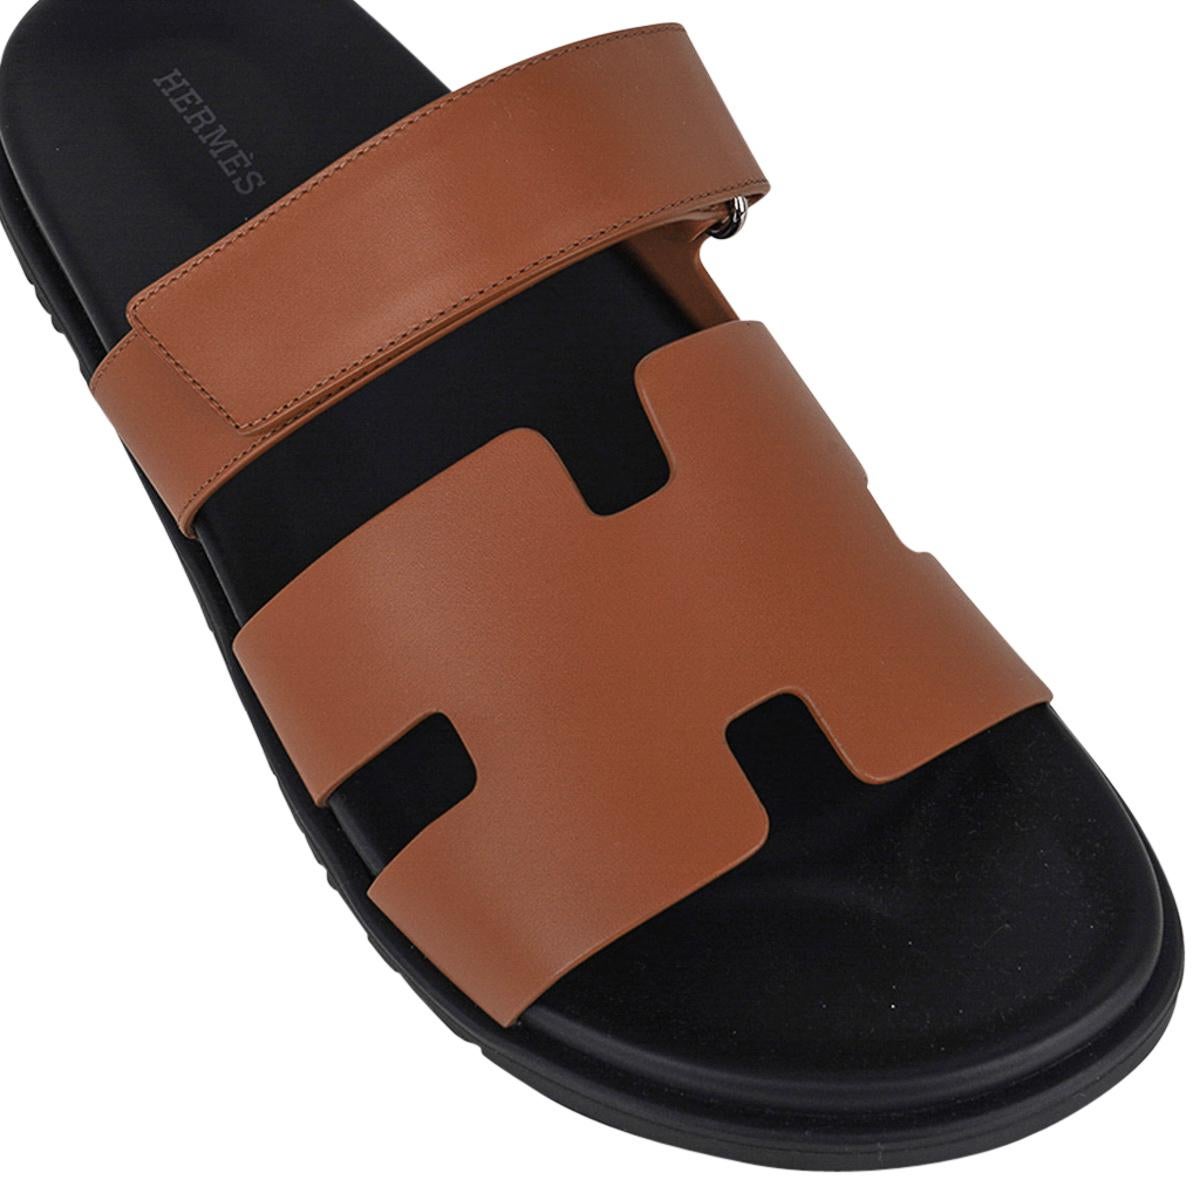 Mightychic propose une sandale Hermès Chypre pour homme présentée dans Naturel Safari.
Cuir de veau, semelle intérieure anatomique noire et semelle en caoutchouc noir gaufré.
Confortable et neutre, cette sandale s'accordera avec une myriade de